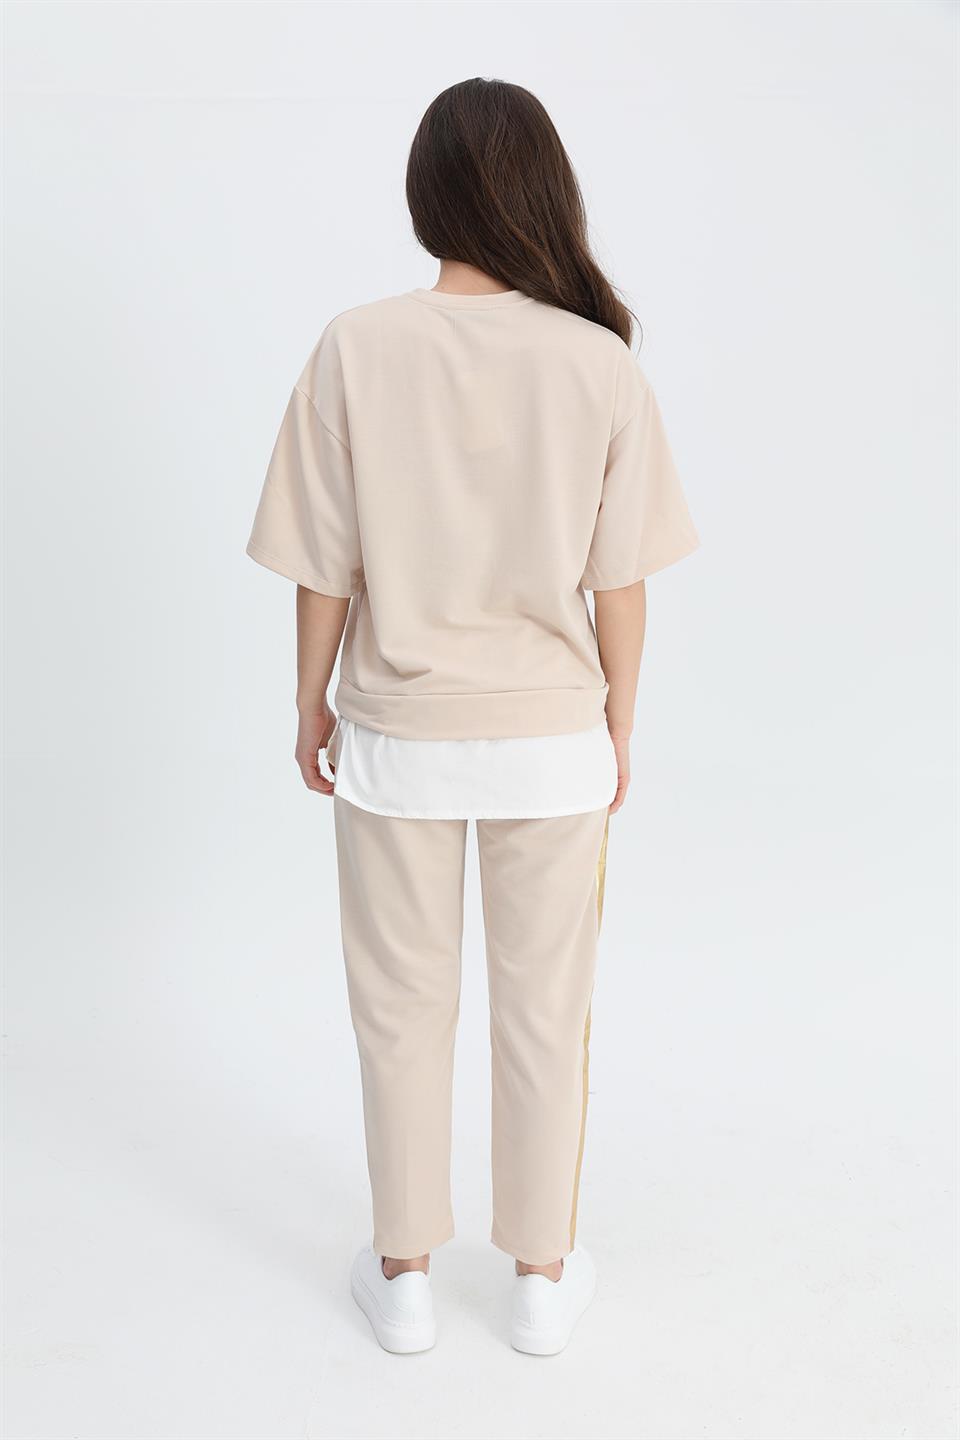 Women's Suit Skirt Grass Bird Printed Elastic Waist T-shirt Trousers - Beige - STREETMODE ™